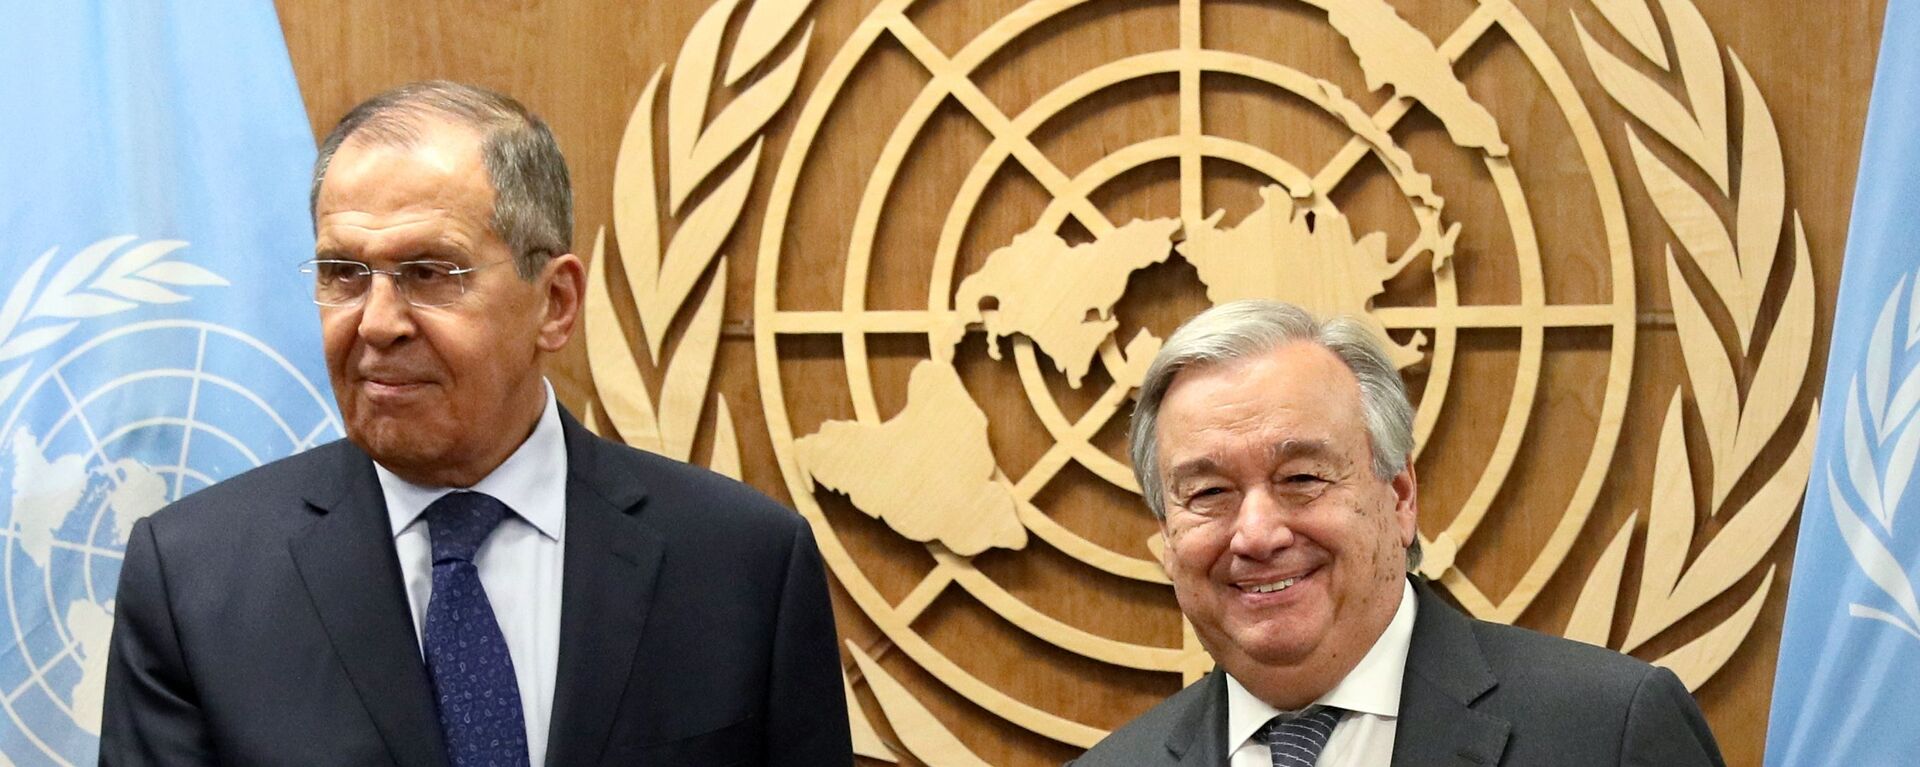 Министр иностранных дел РФ Сергей Лавров (слева) и генеральный секретарь Организации Объединенных Наций (ООН) Антониу Гутерреш  - Sputnik Армения, 1920, 03.12.2020